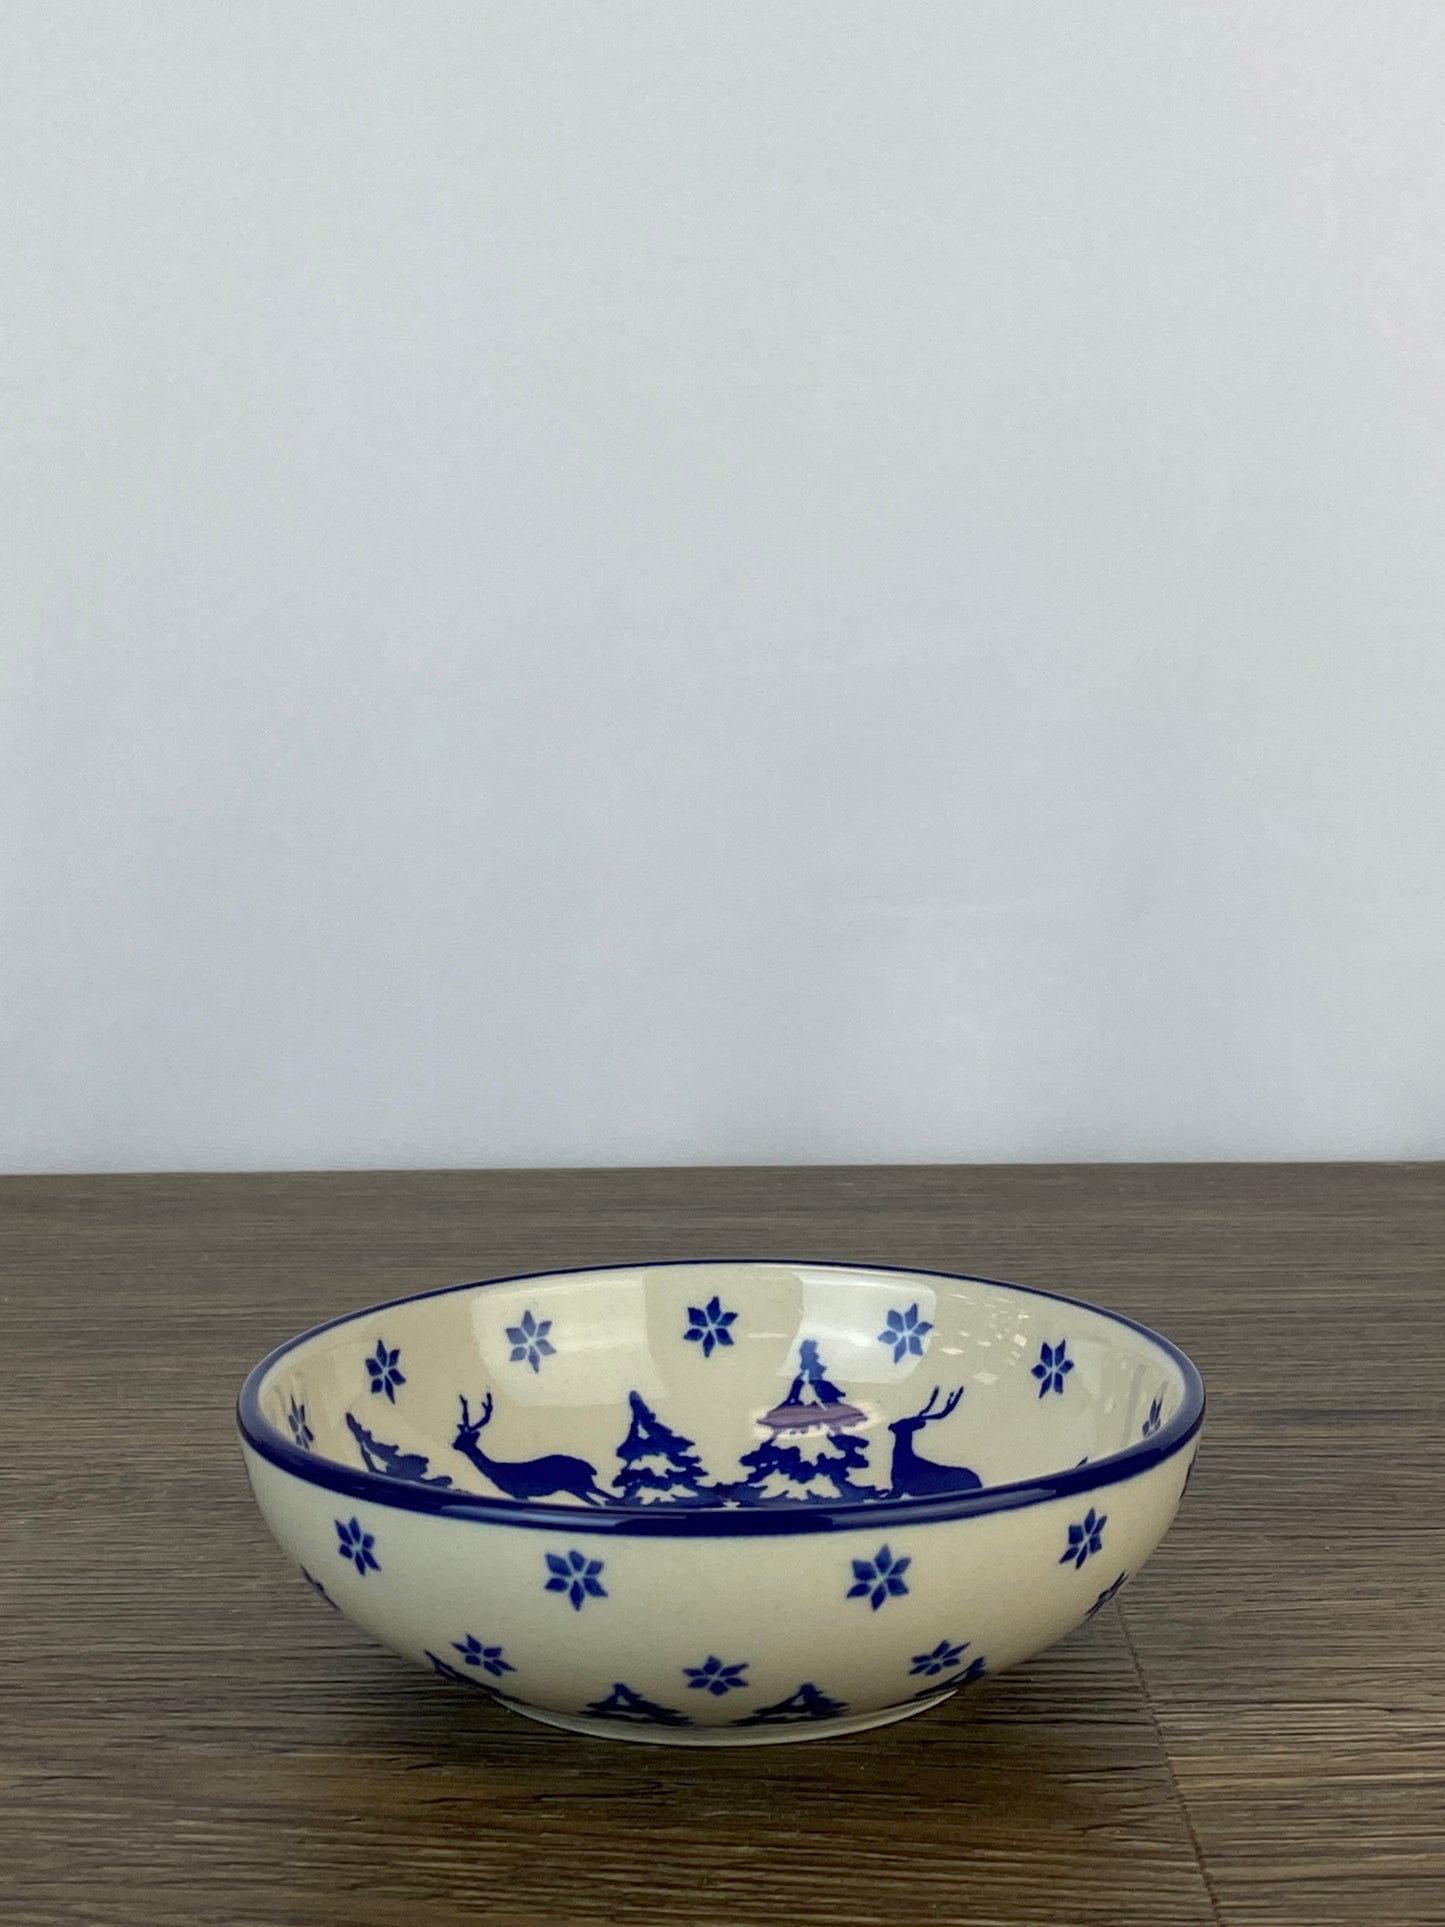 Small Bowl - Shape B89 - Pattern 1931